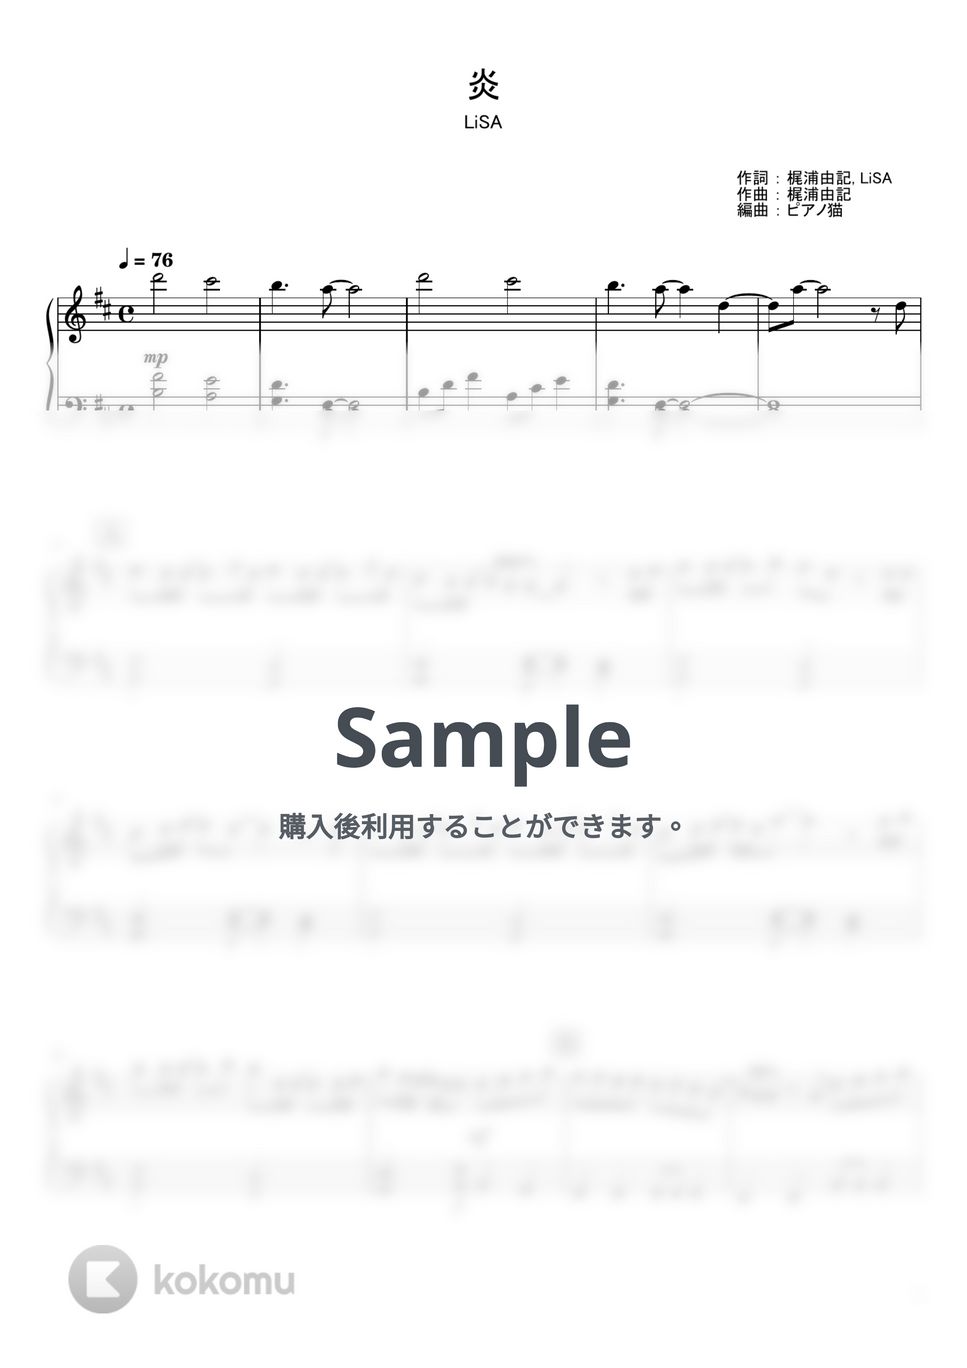 梶浦由記 - 炎 (ピアノ楽譜) by ピアノ猫